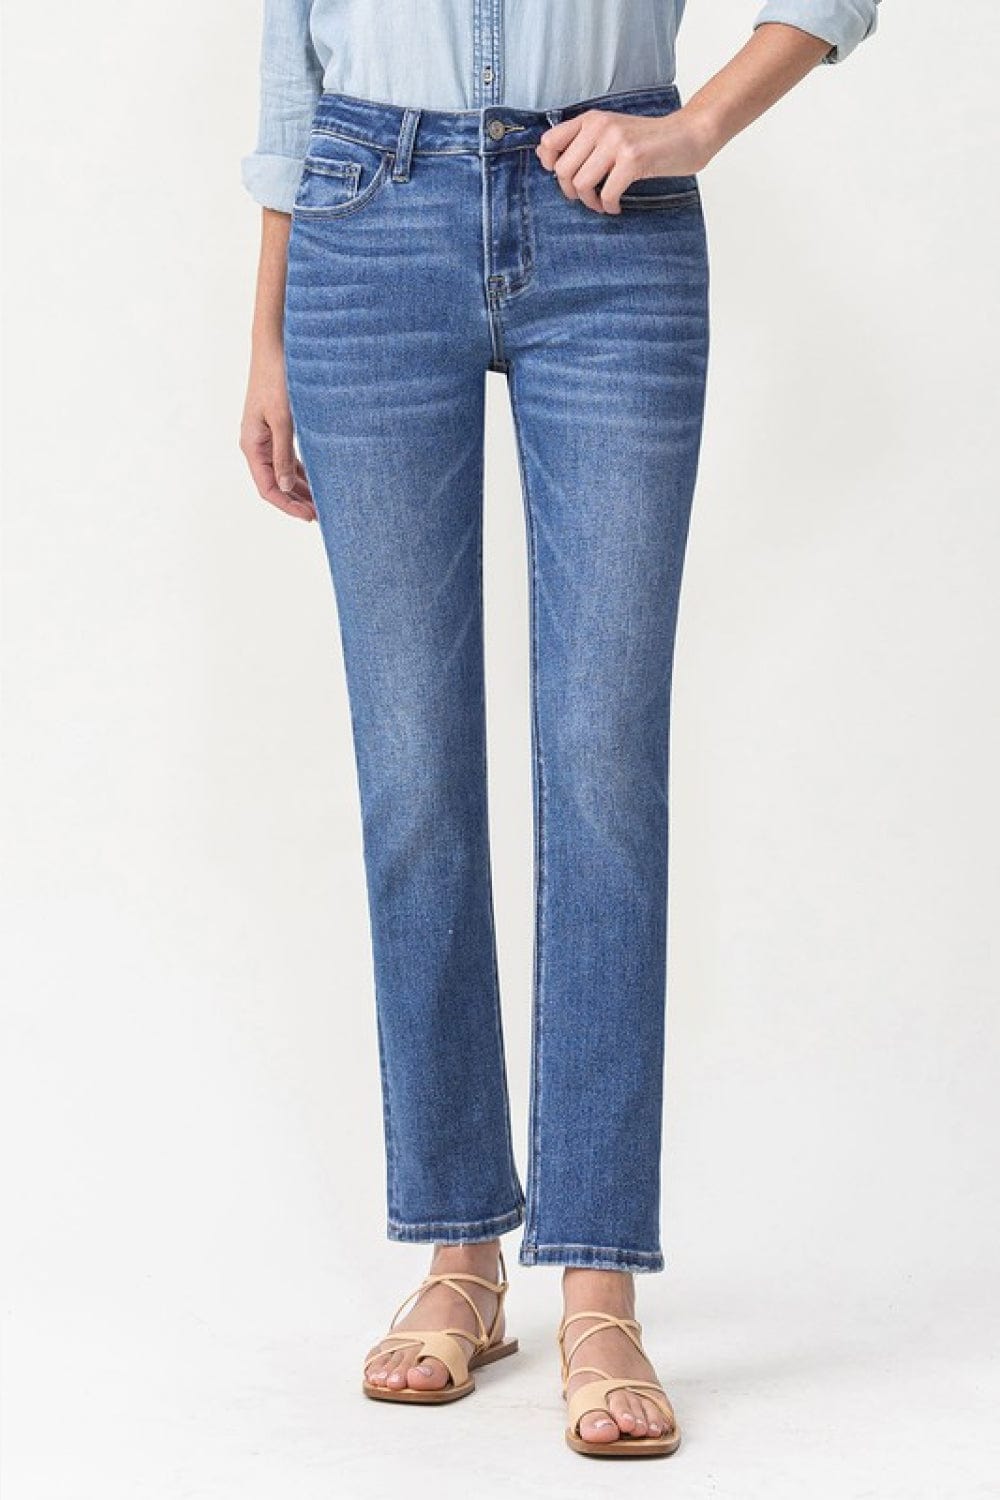 Lovervet Full Size Maggie Midrise Slim Ankle Straight Jeans Trendsi Jeans Medium / 24